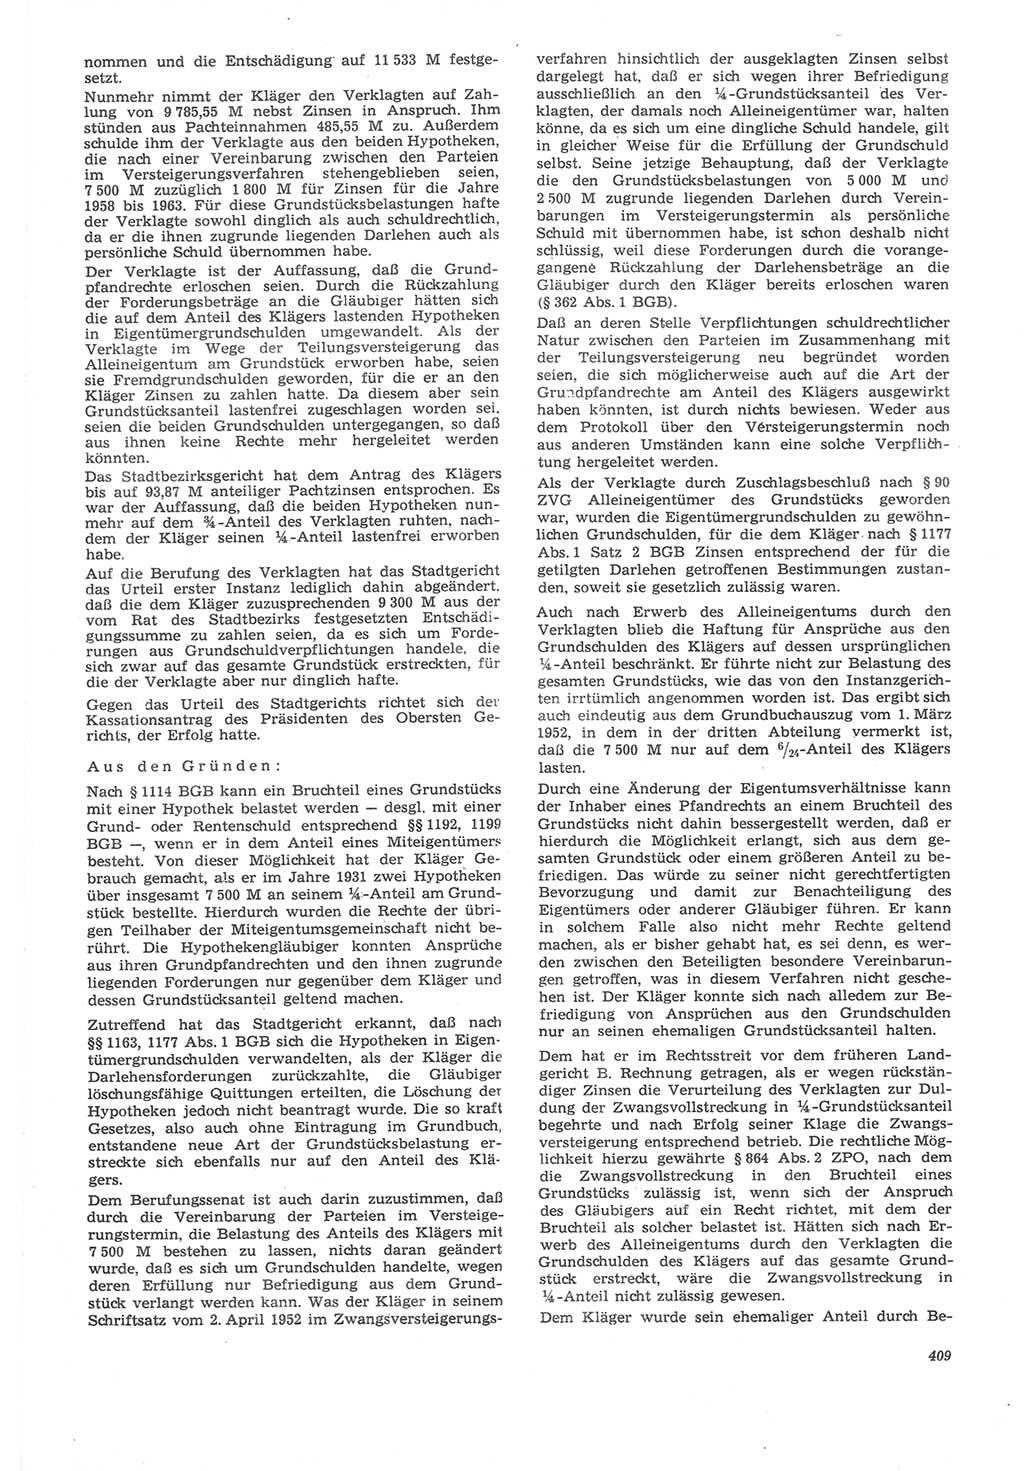 Neue Justiz (NJ), Zeitschrift für Recht und Rechtswissenschaft [Deutsche Demokratische Republik (DDR)], 22. Jahrgang 1968, Seite 409 (NJ DDR 1968, S. 409)